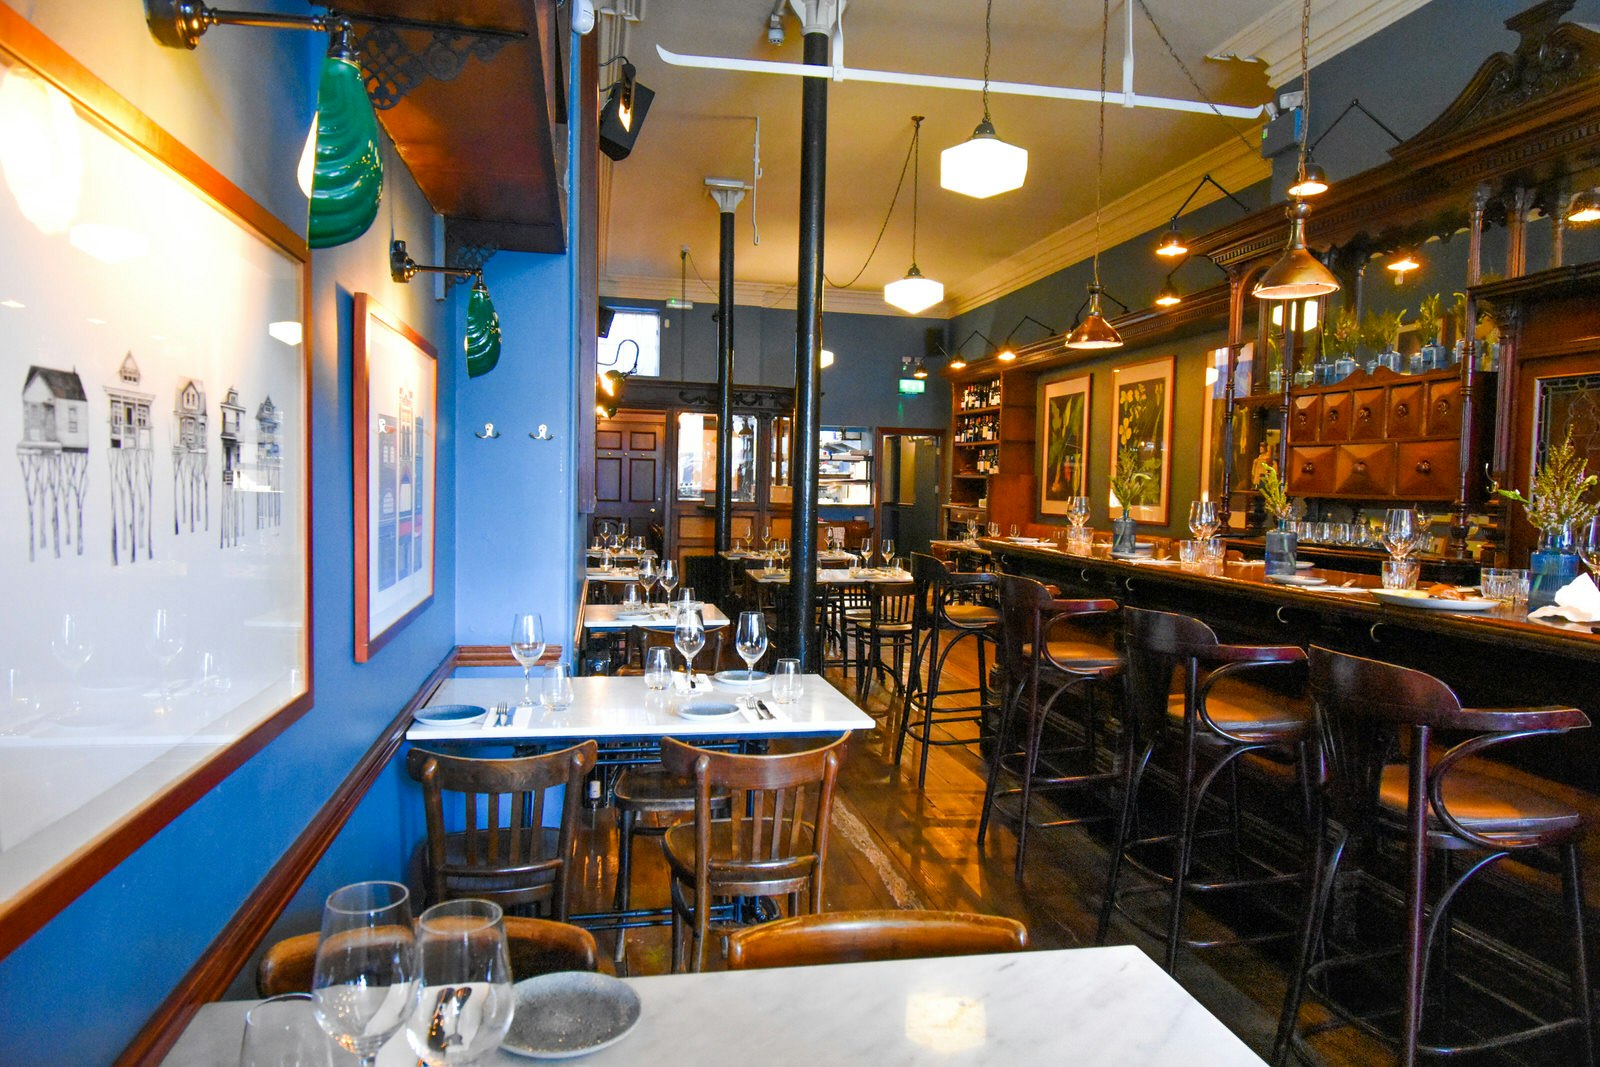 Modern interior of Delahunt restaurant on Camden Street, Dublin. 